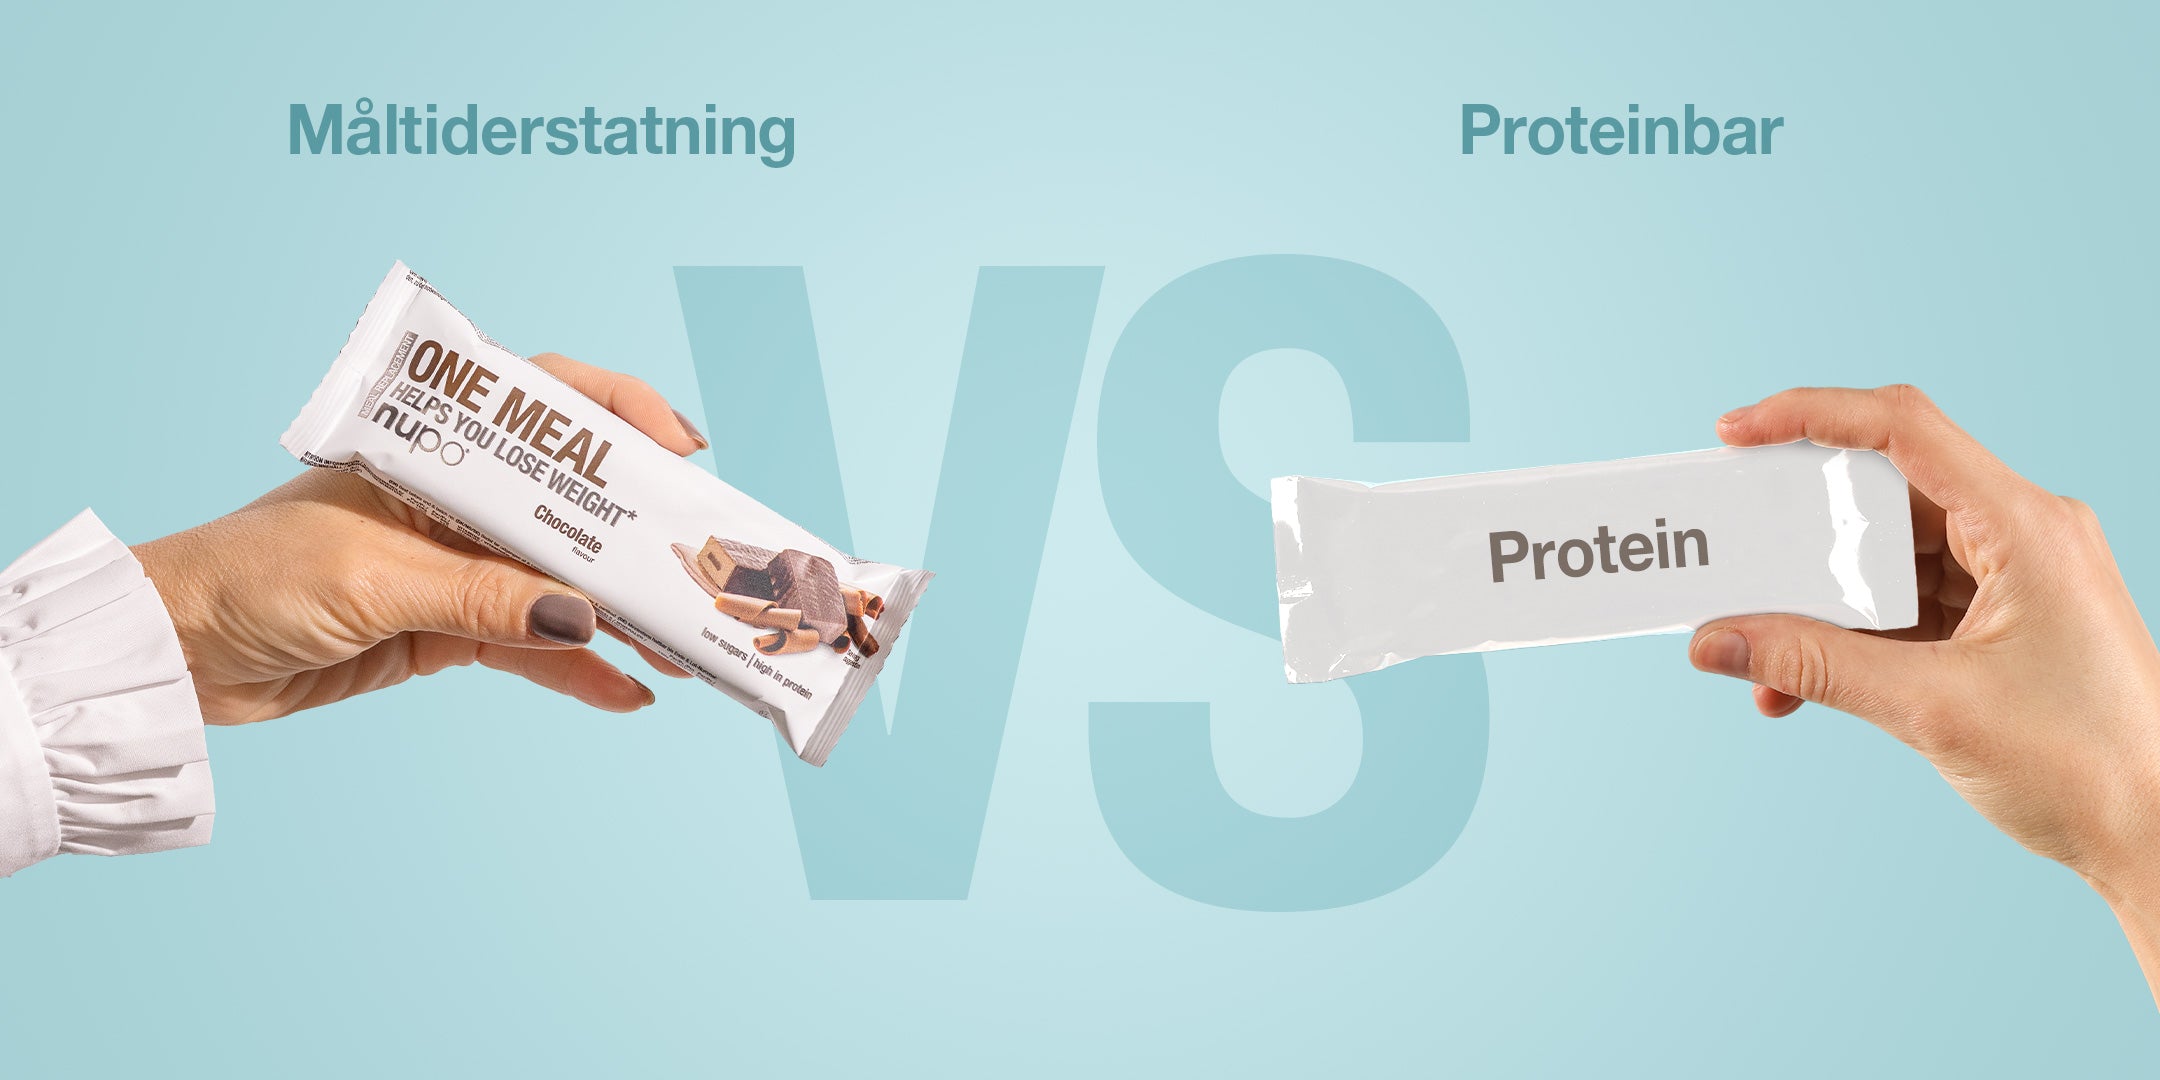 Proteinbarer vs. måltidserstatninger: Hvad er bedst?